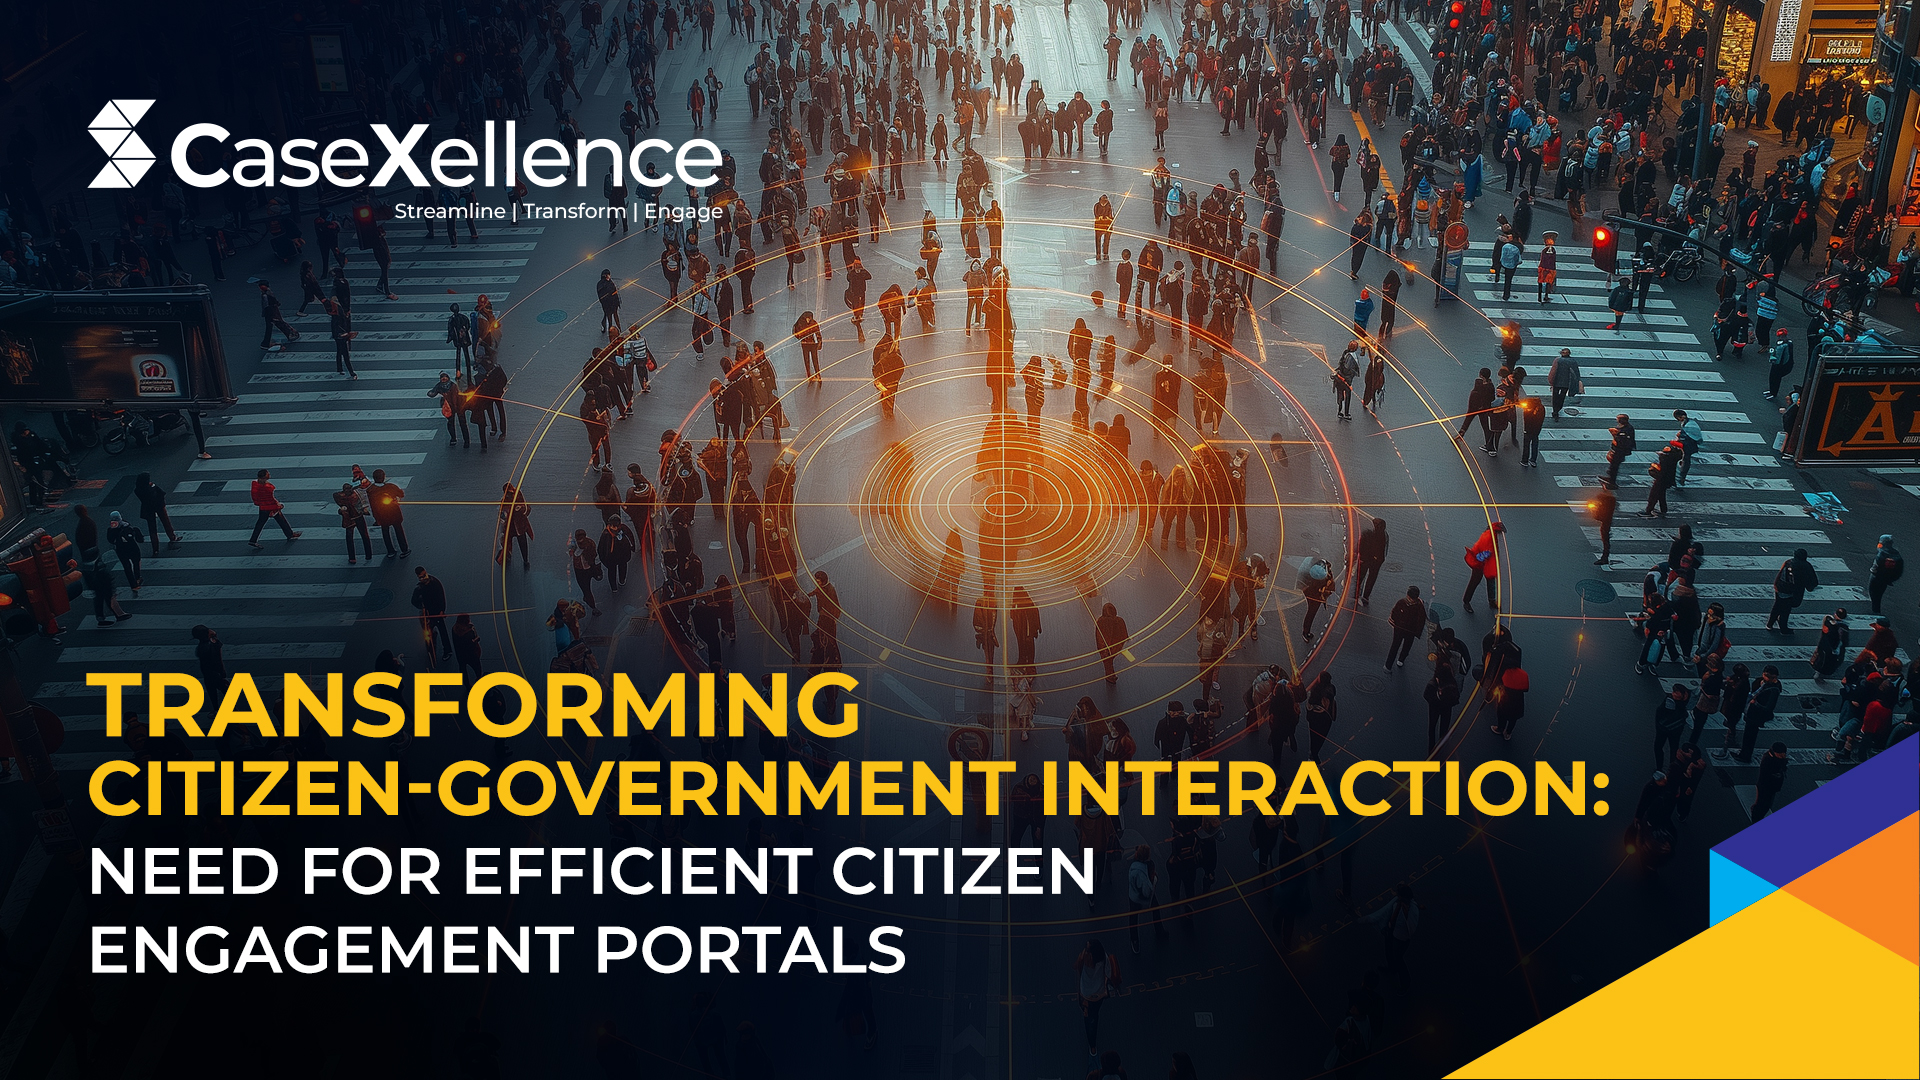 citizen engagement portal